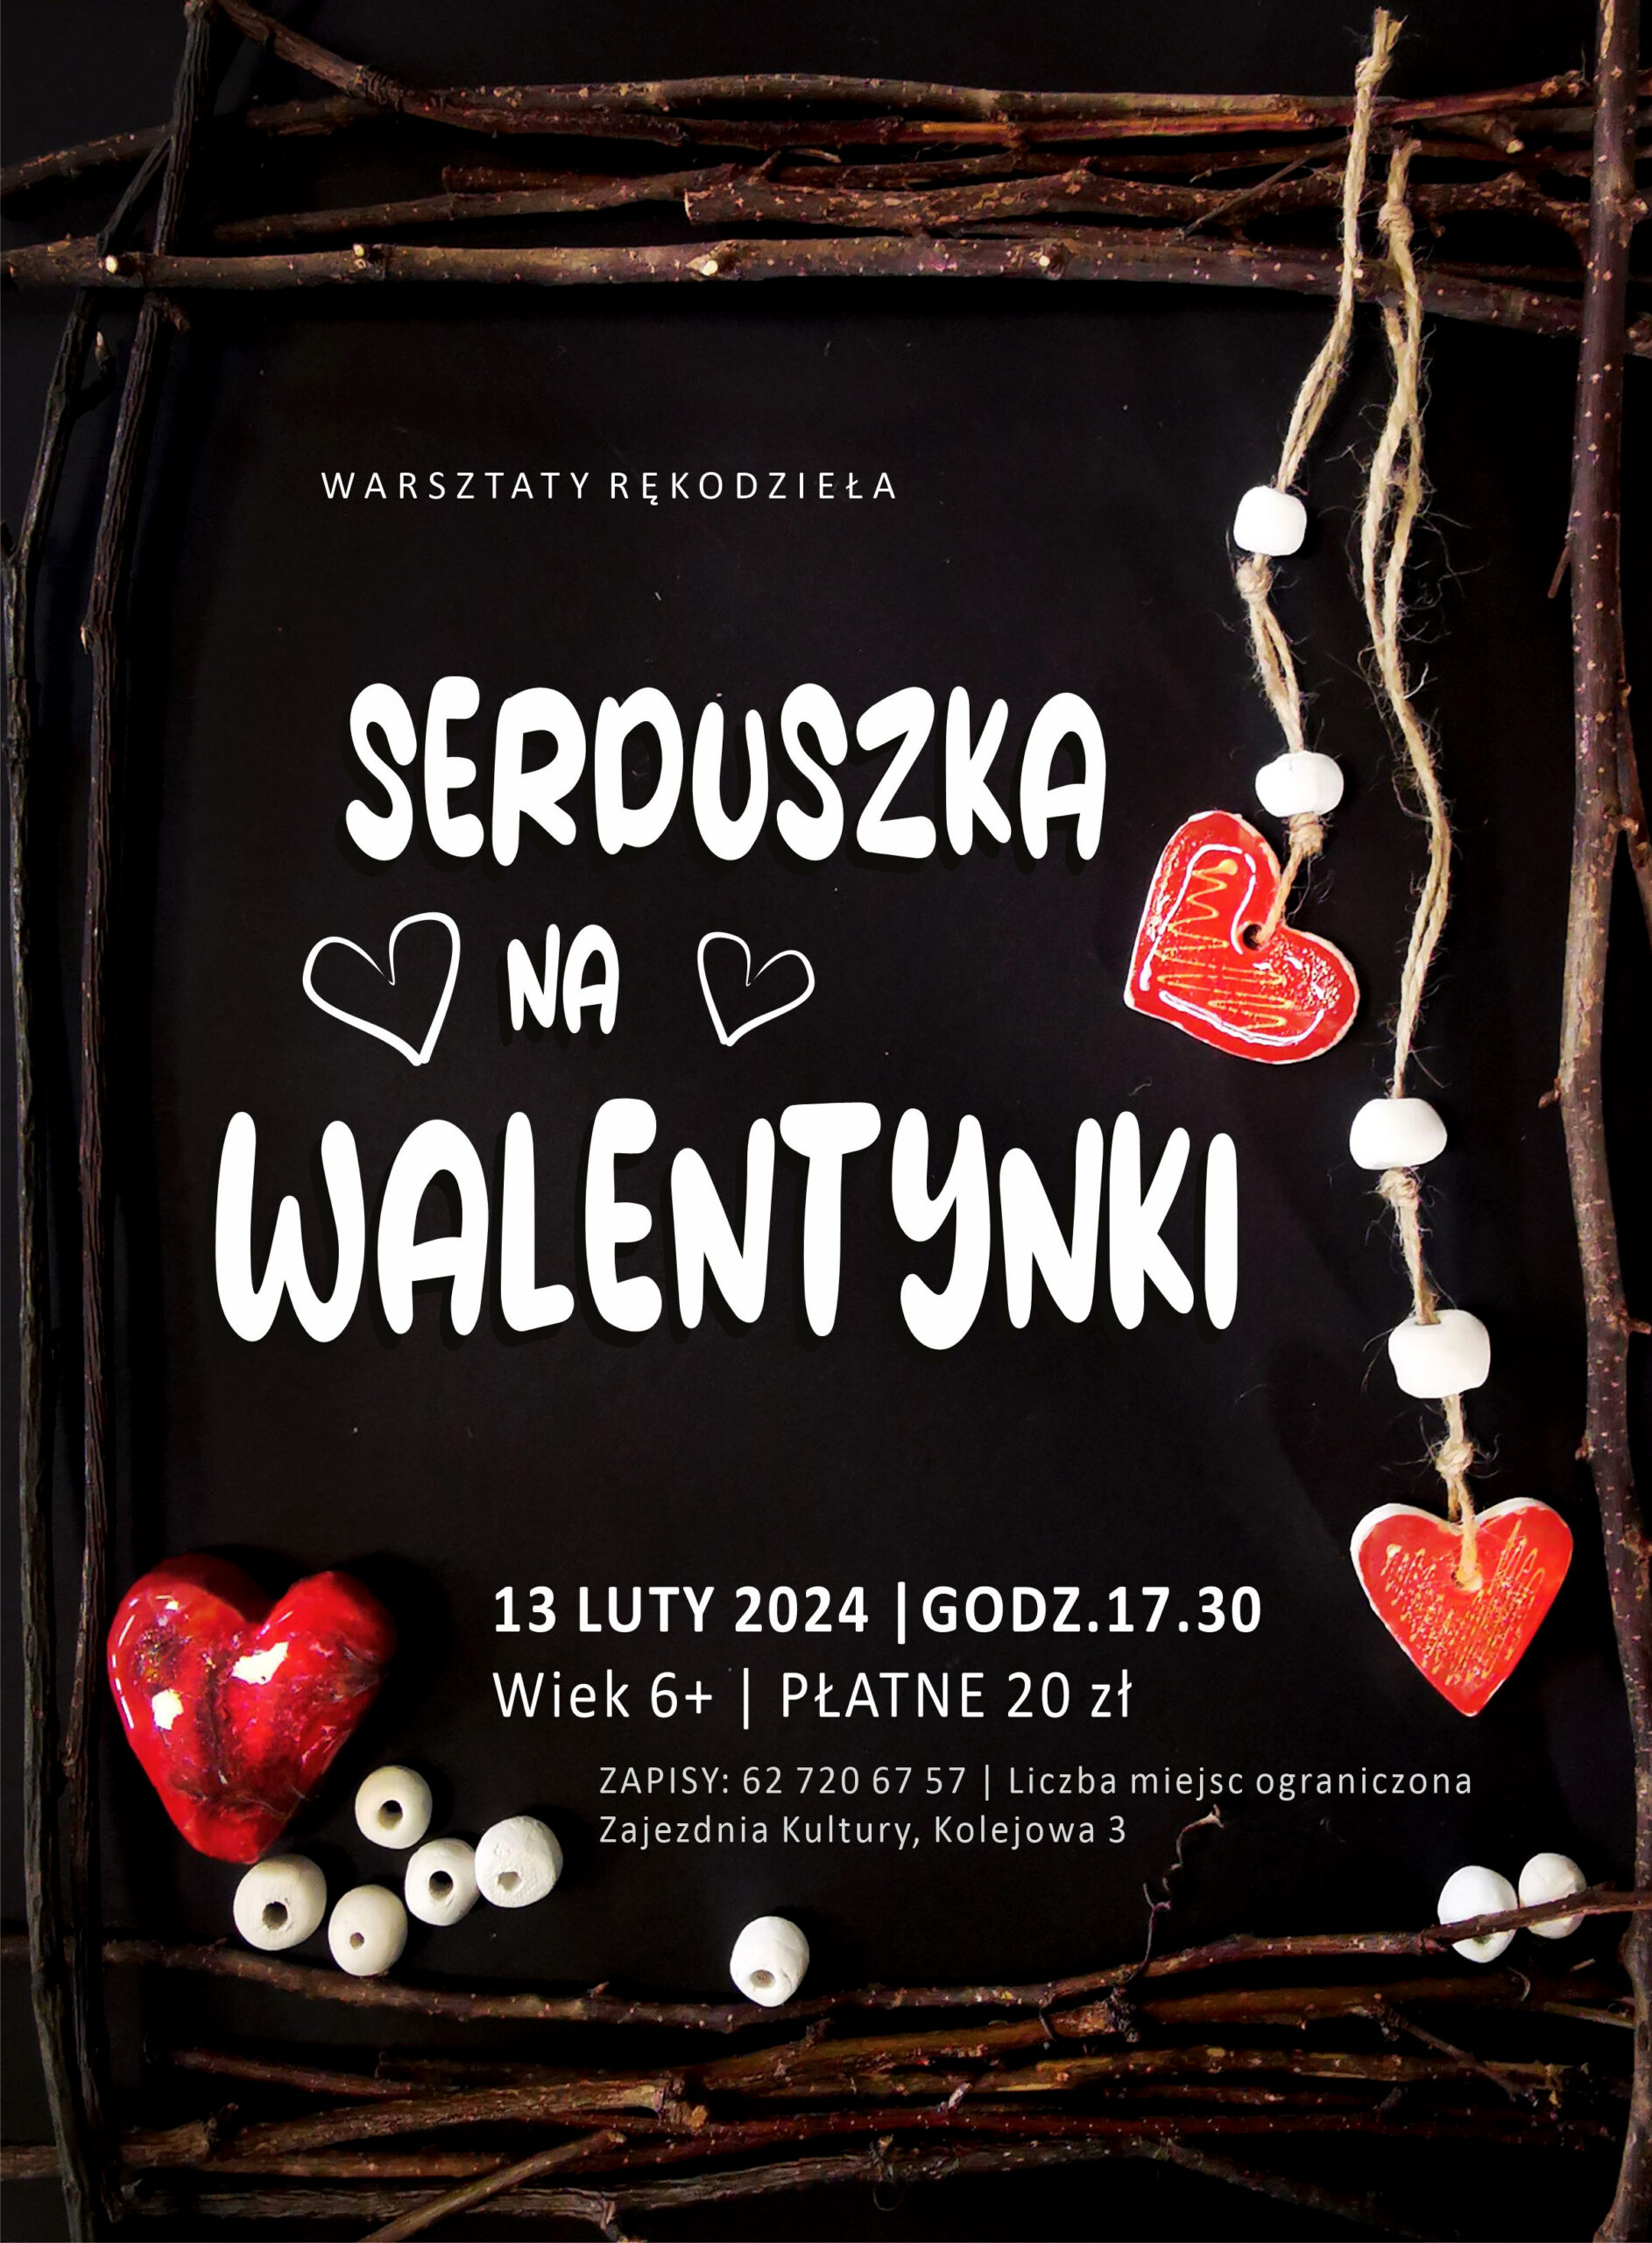 Plakat warsztatów rękodzieła odbywających się w Zajezdni Kultury w Pleszewie 13 lutego 2024 roku o godzinie 17:30.